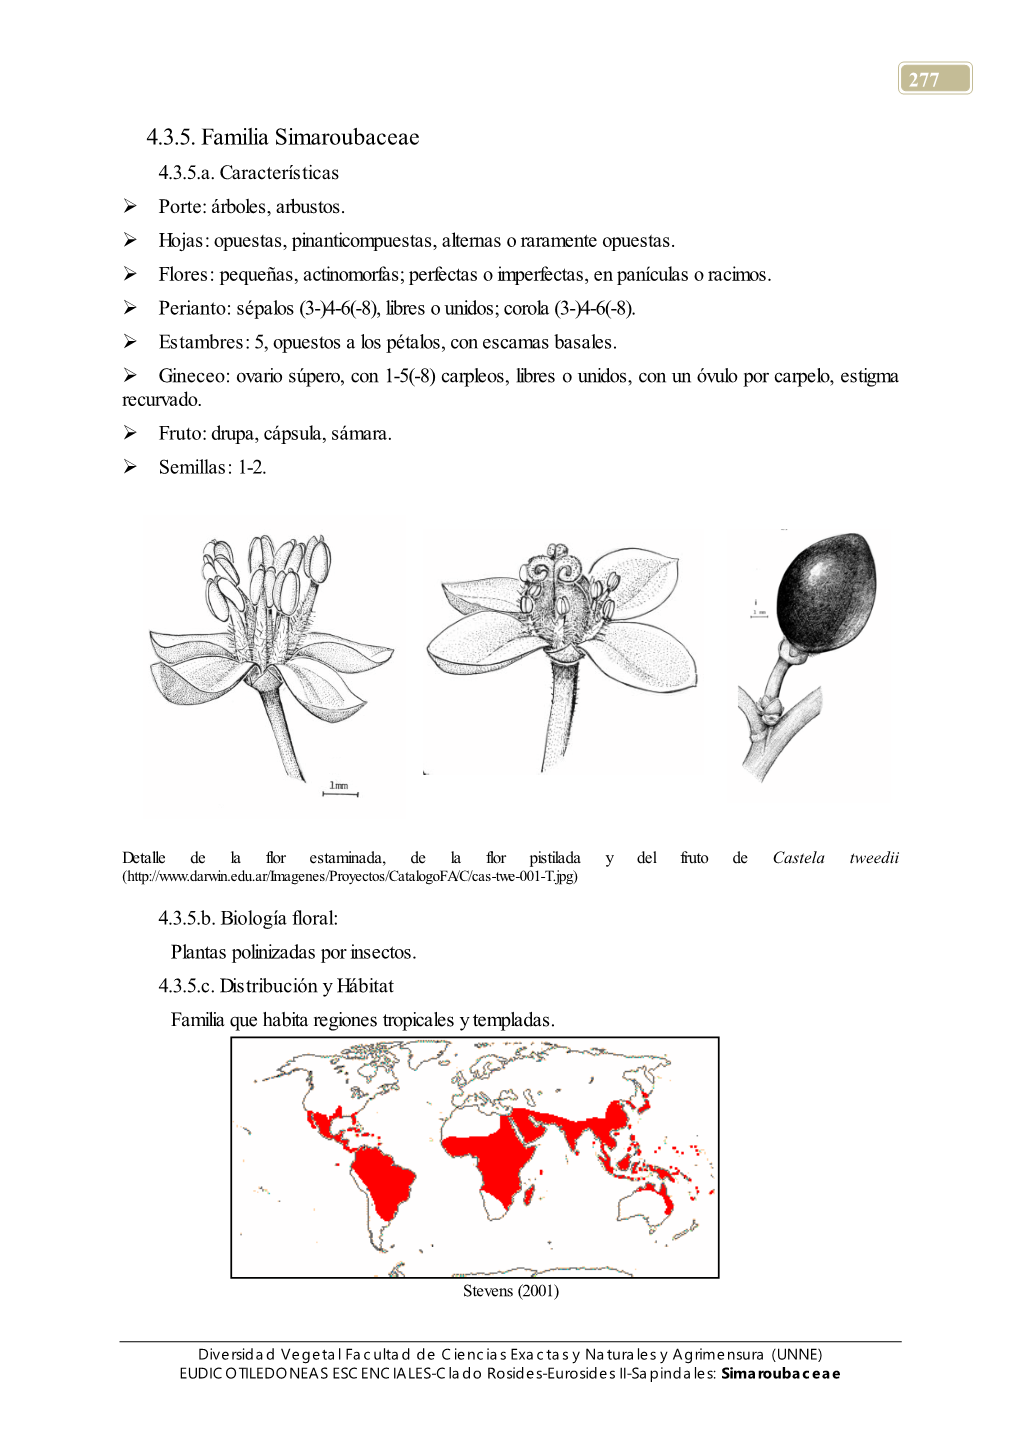 4.3.5. Familia Simaroubaceae 4.3.5.A